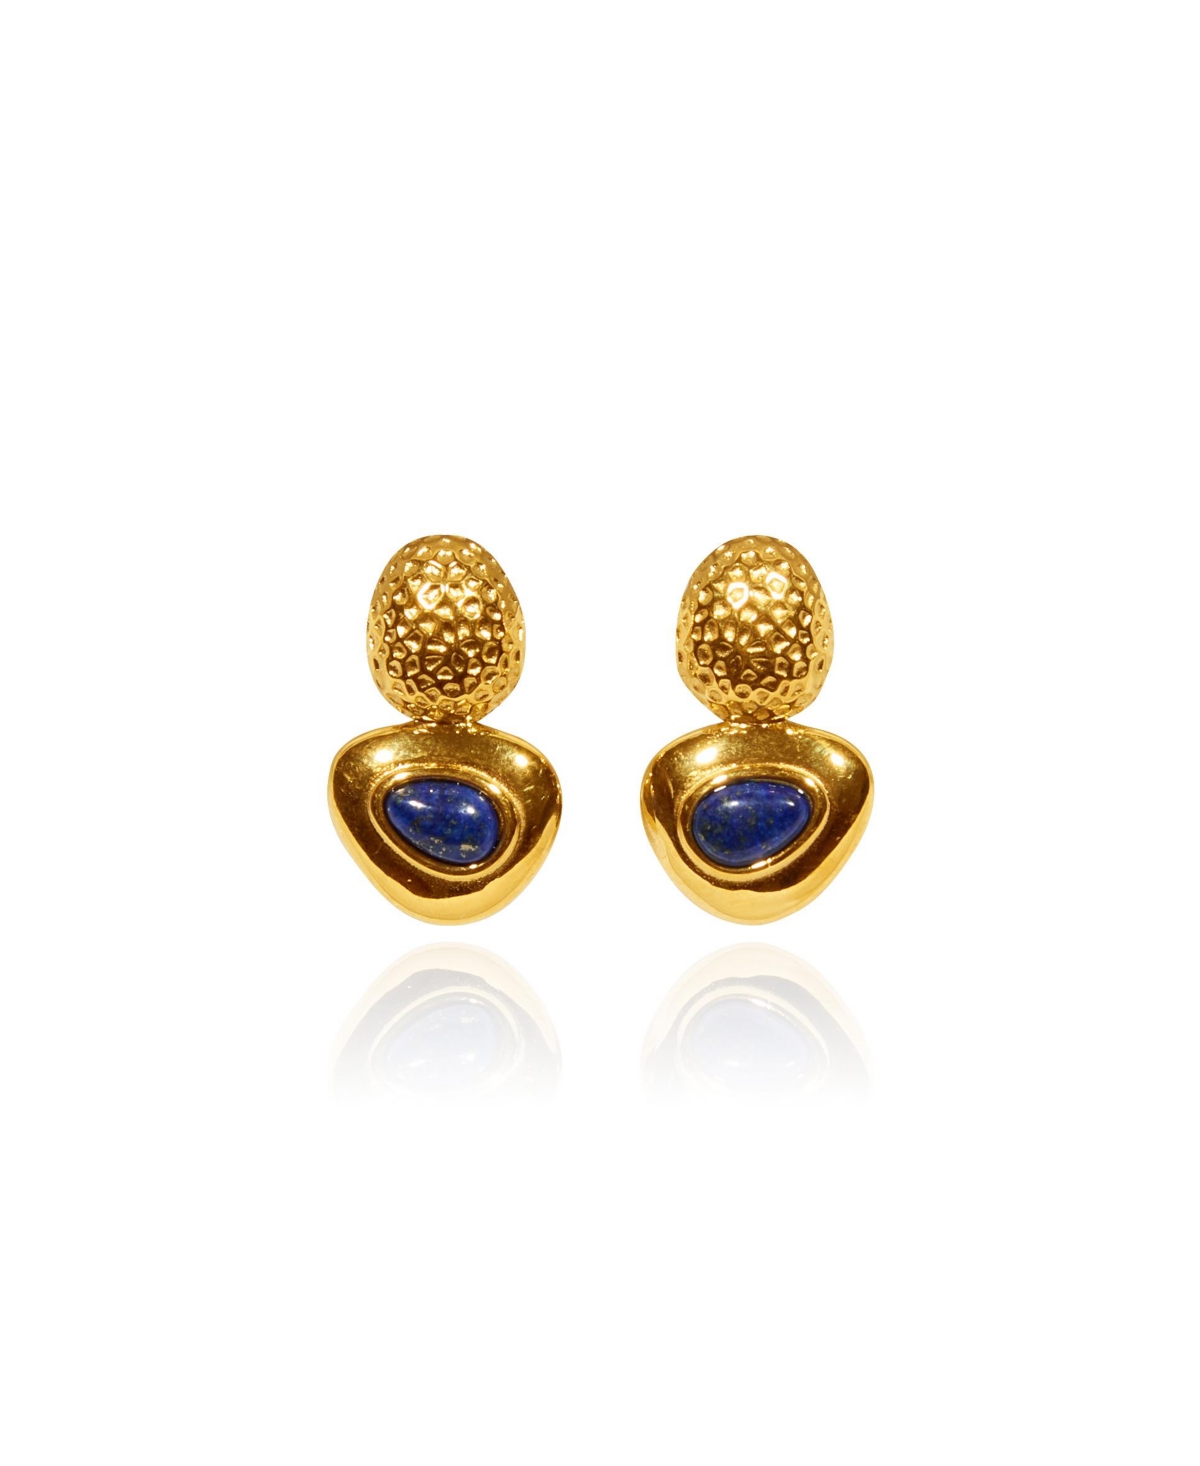 Kamel Earrings - Gold